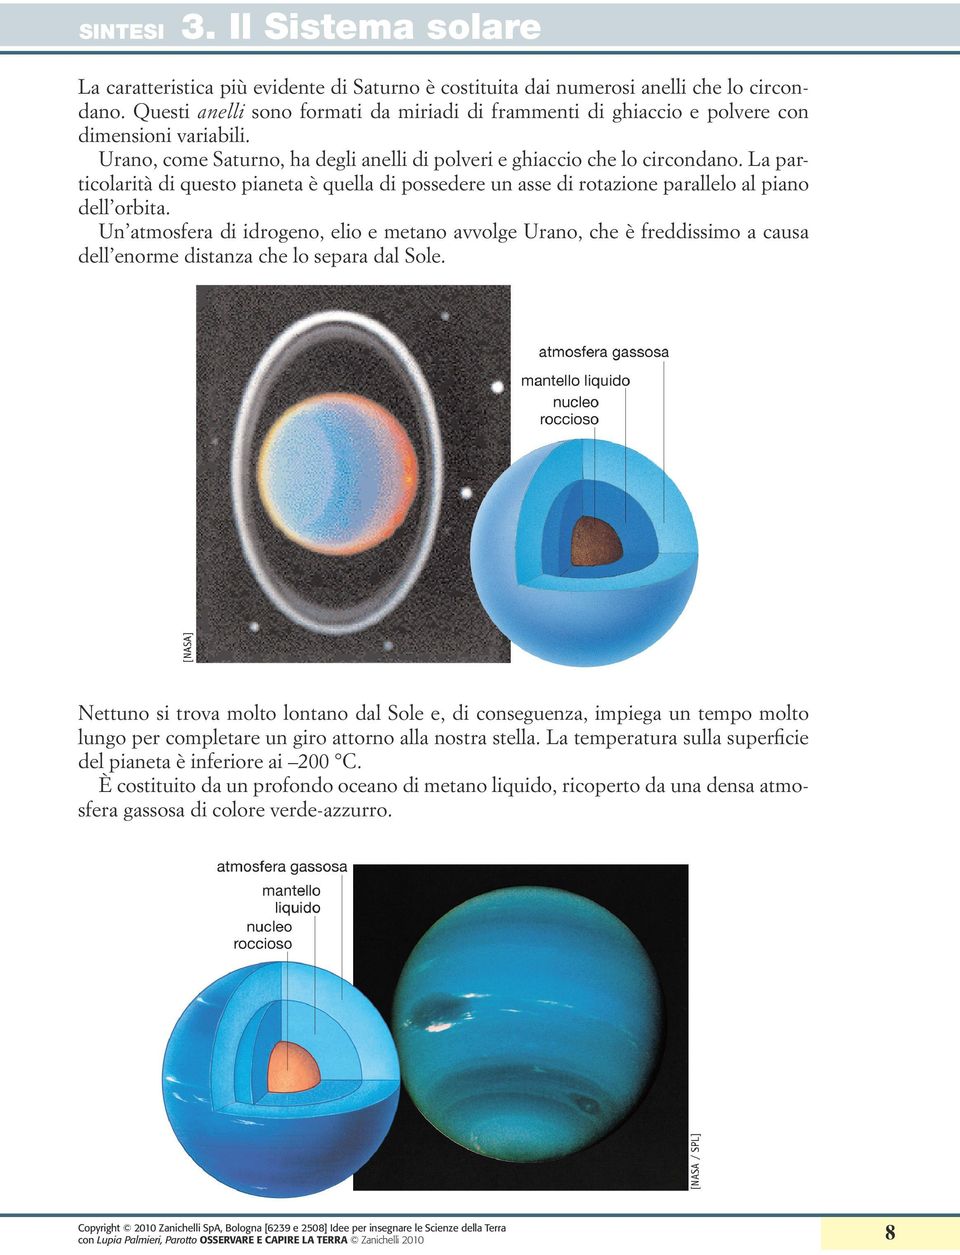 Un atmosfera di idrogeno, elio e metano avvolge Urano, che è freddissimo a causa dell enorme distanza che lo separa dal Sole.